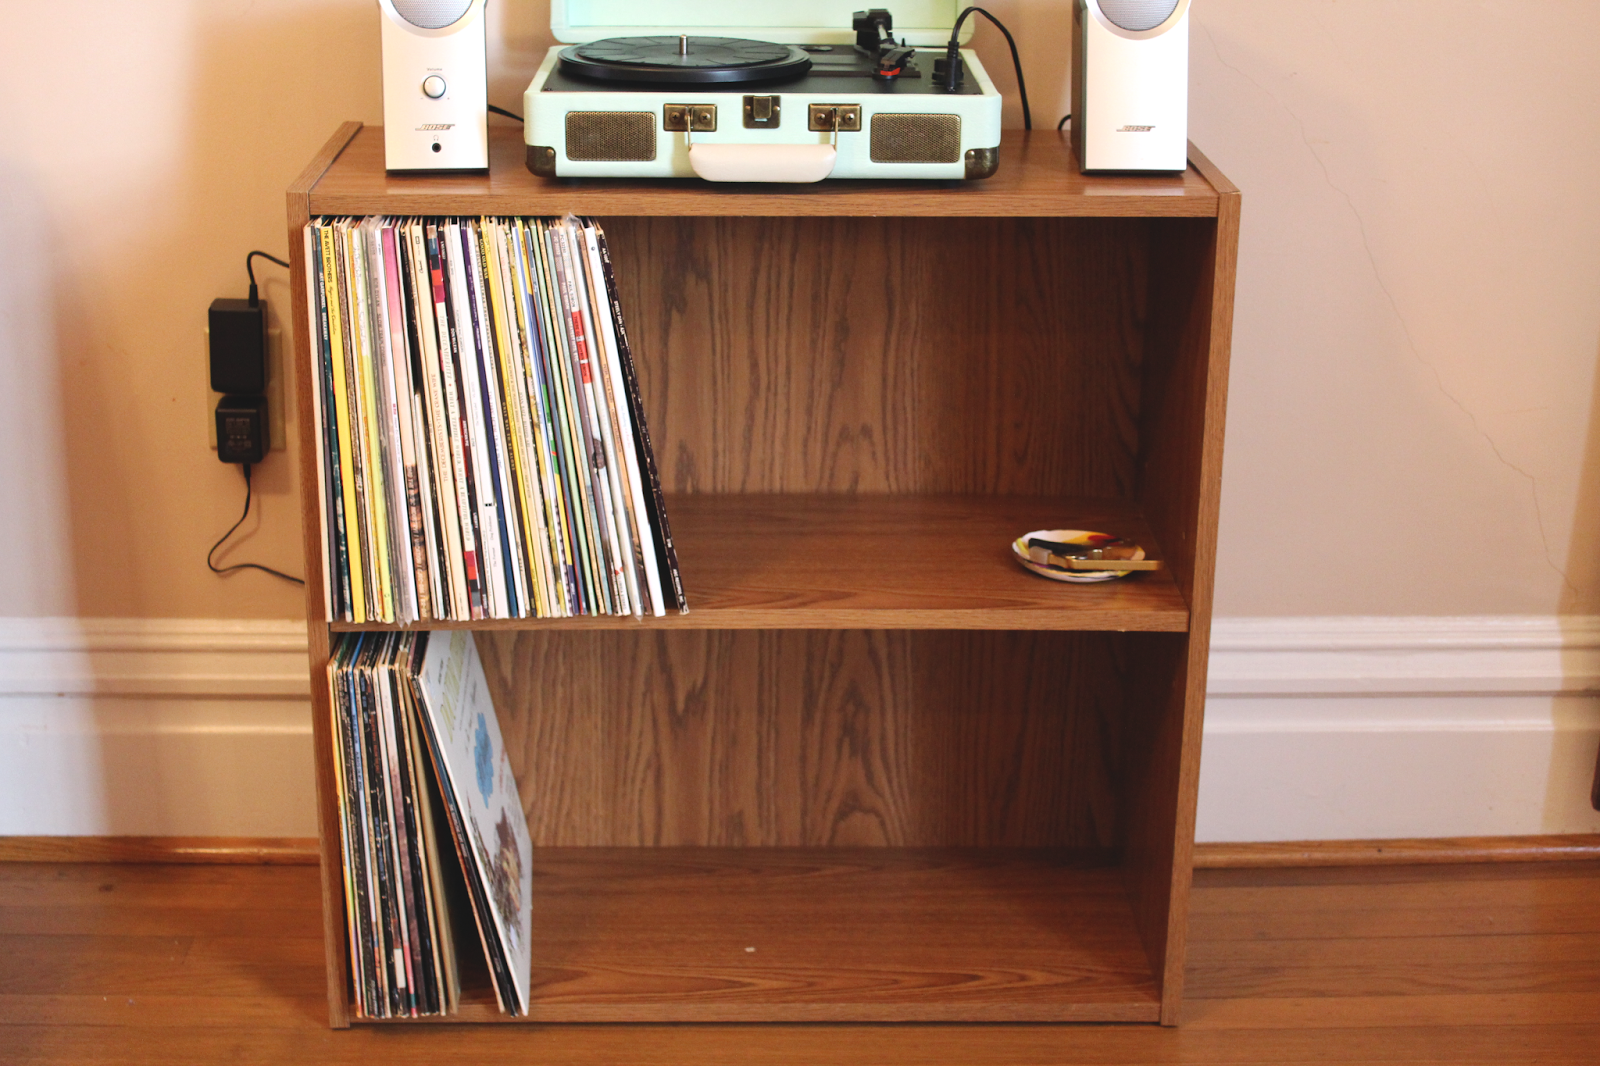 Vinyl Record Shelf Vinyl record shelf, Record shelf, Shelves